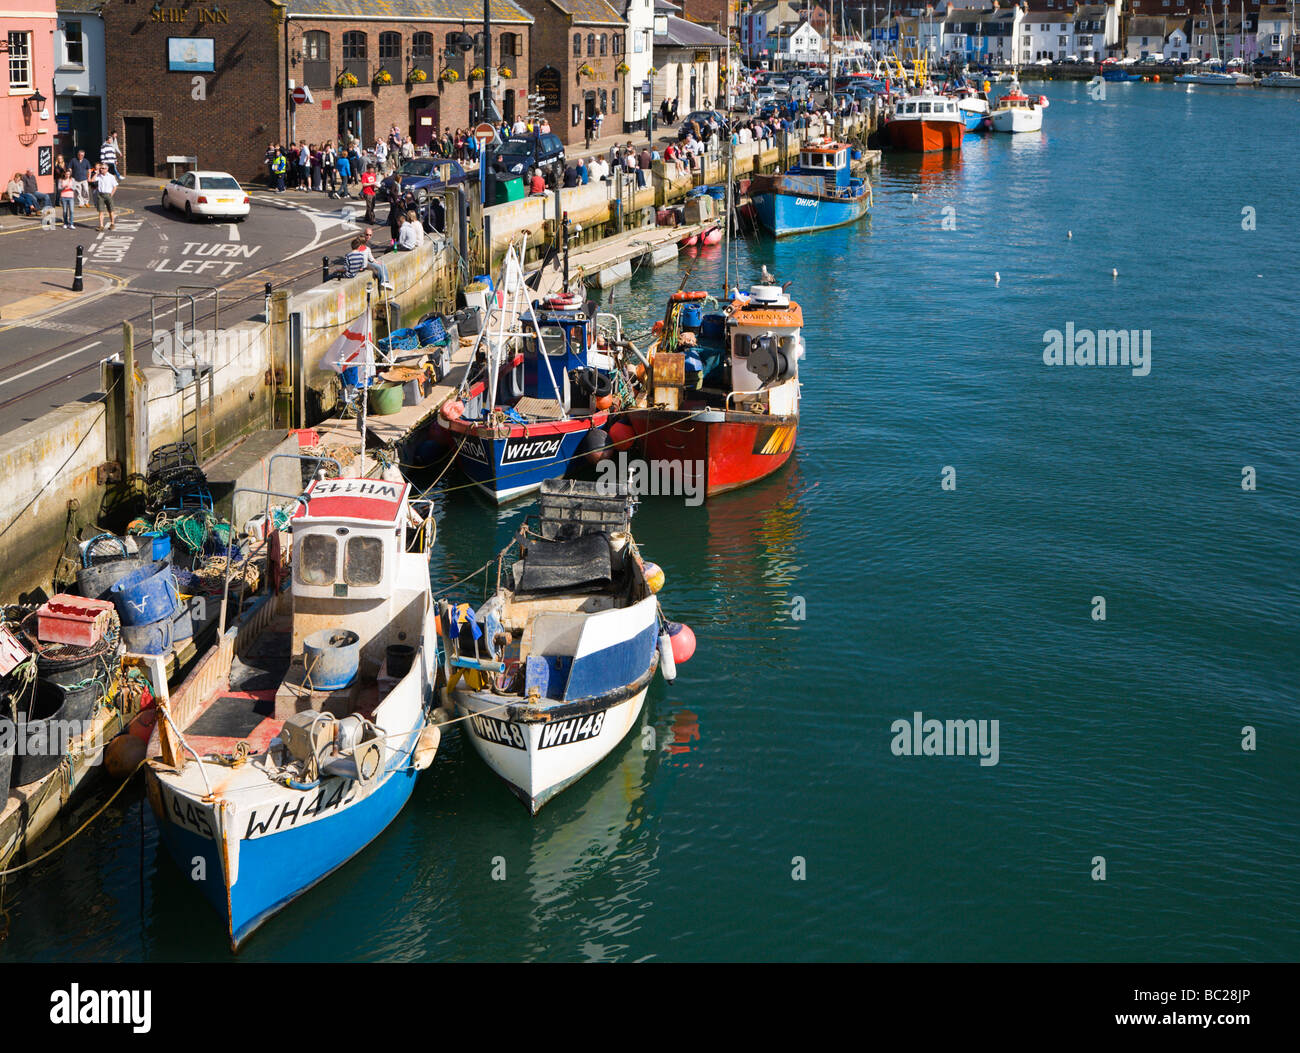 Les bateaux de pêche et chalutiers amarrés au quai. Port de Weymouth. Le Dorset. UK. Banque D'Images